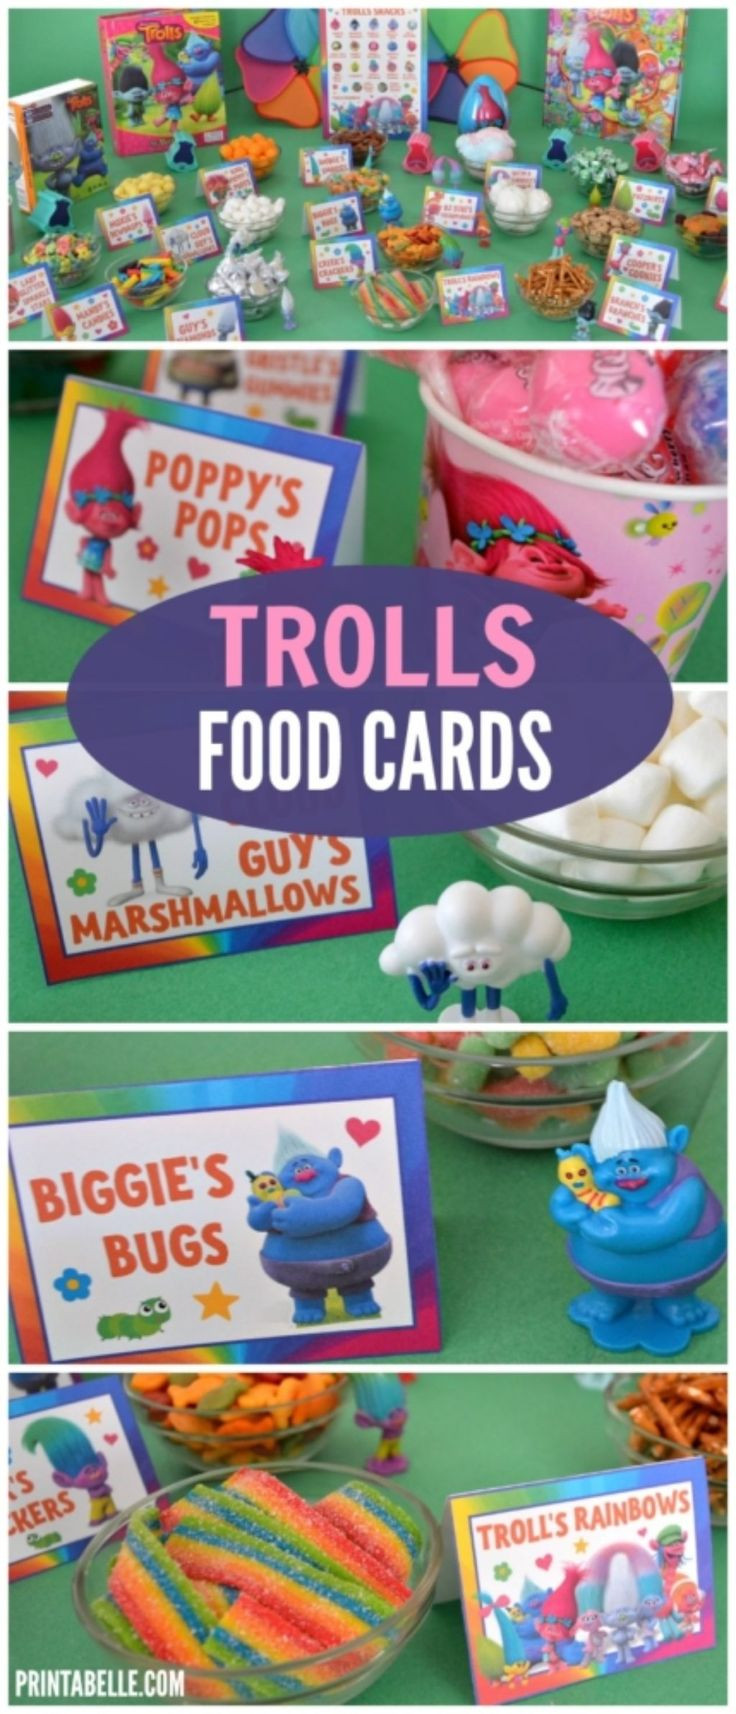 Trolls Birthday Party Ideas For Food
 Trolls Party Food Card Set Trolls Party